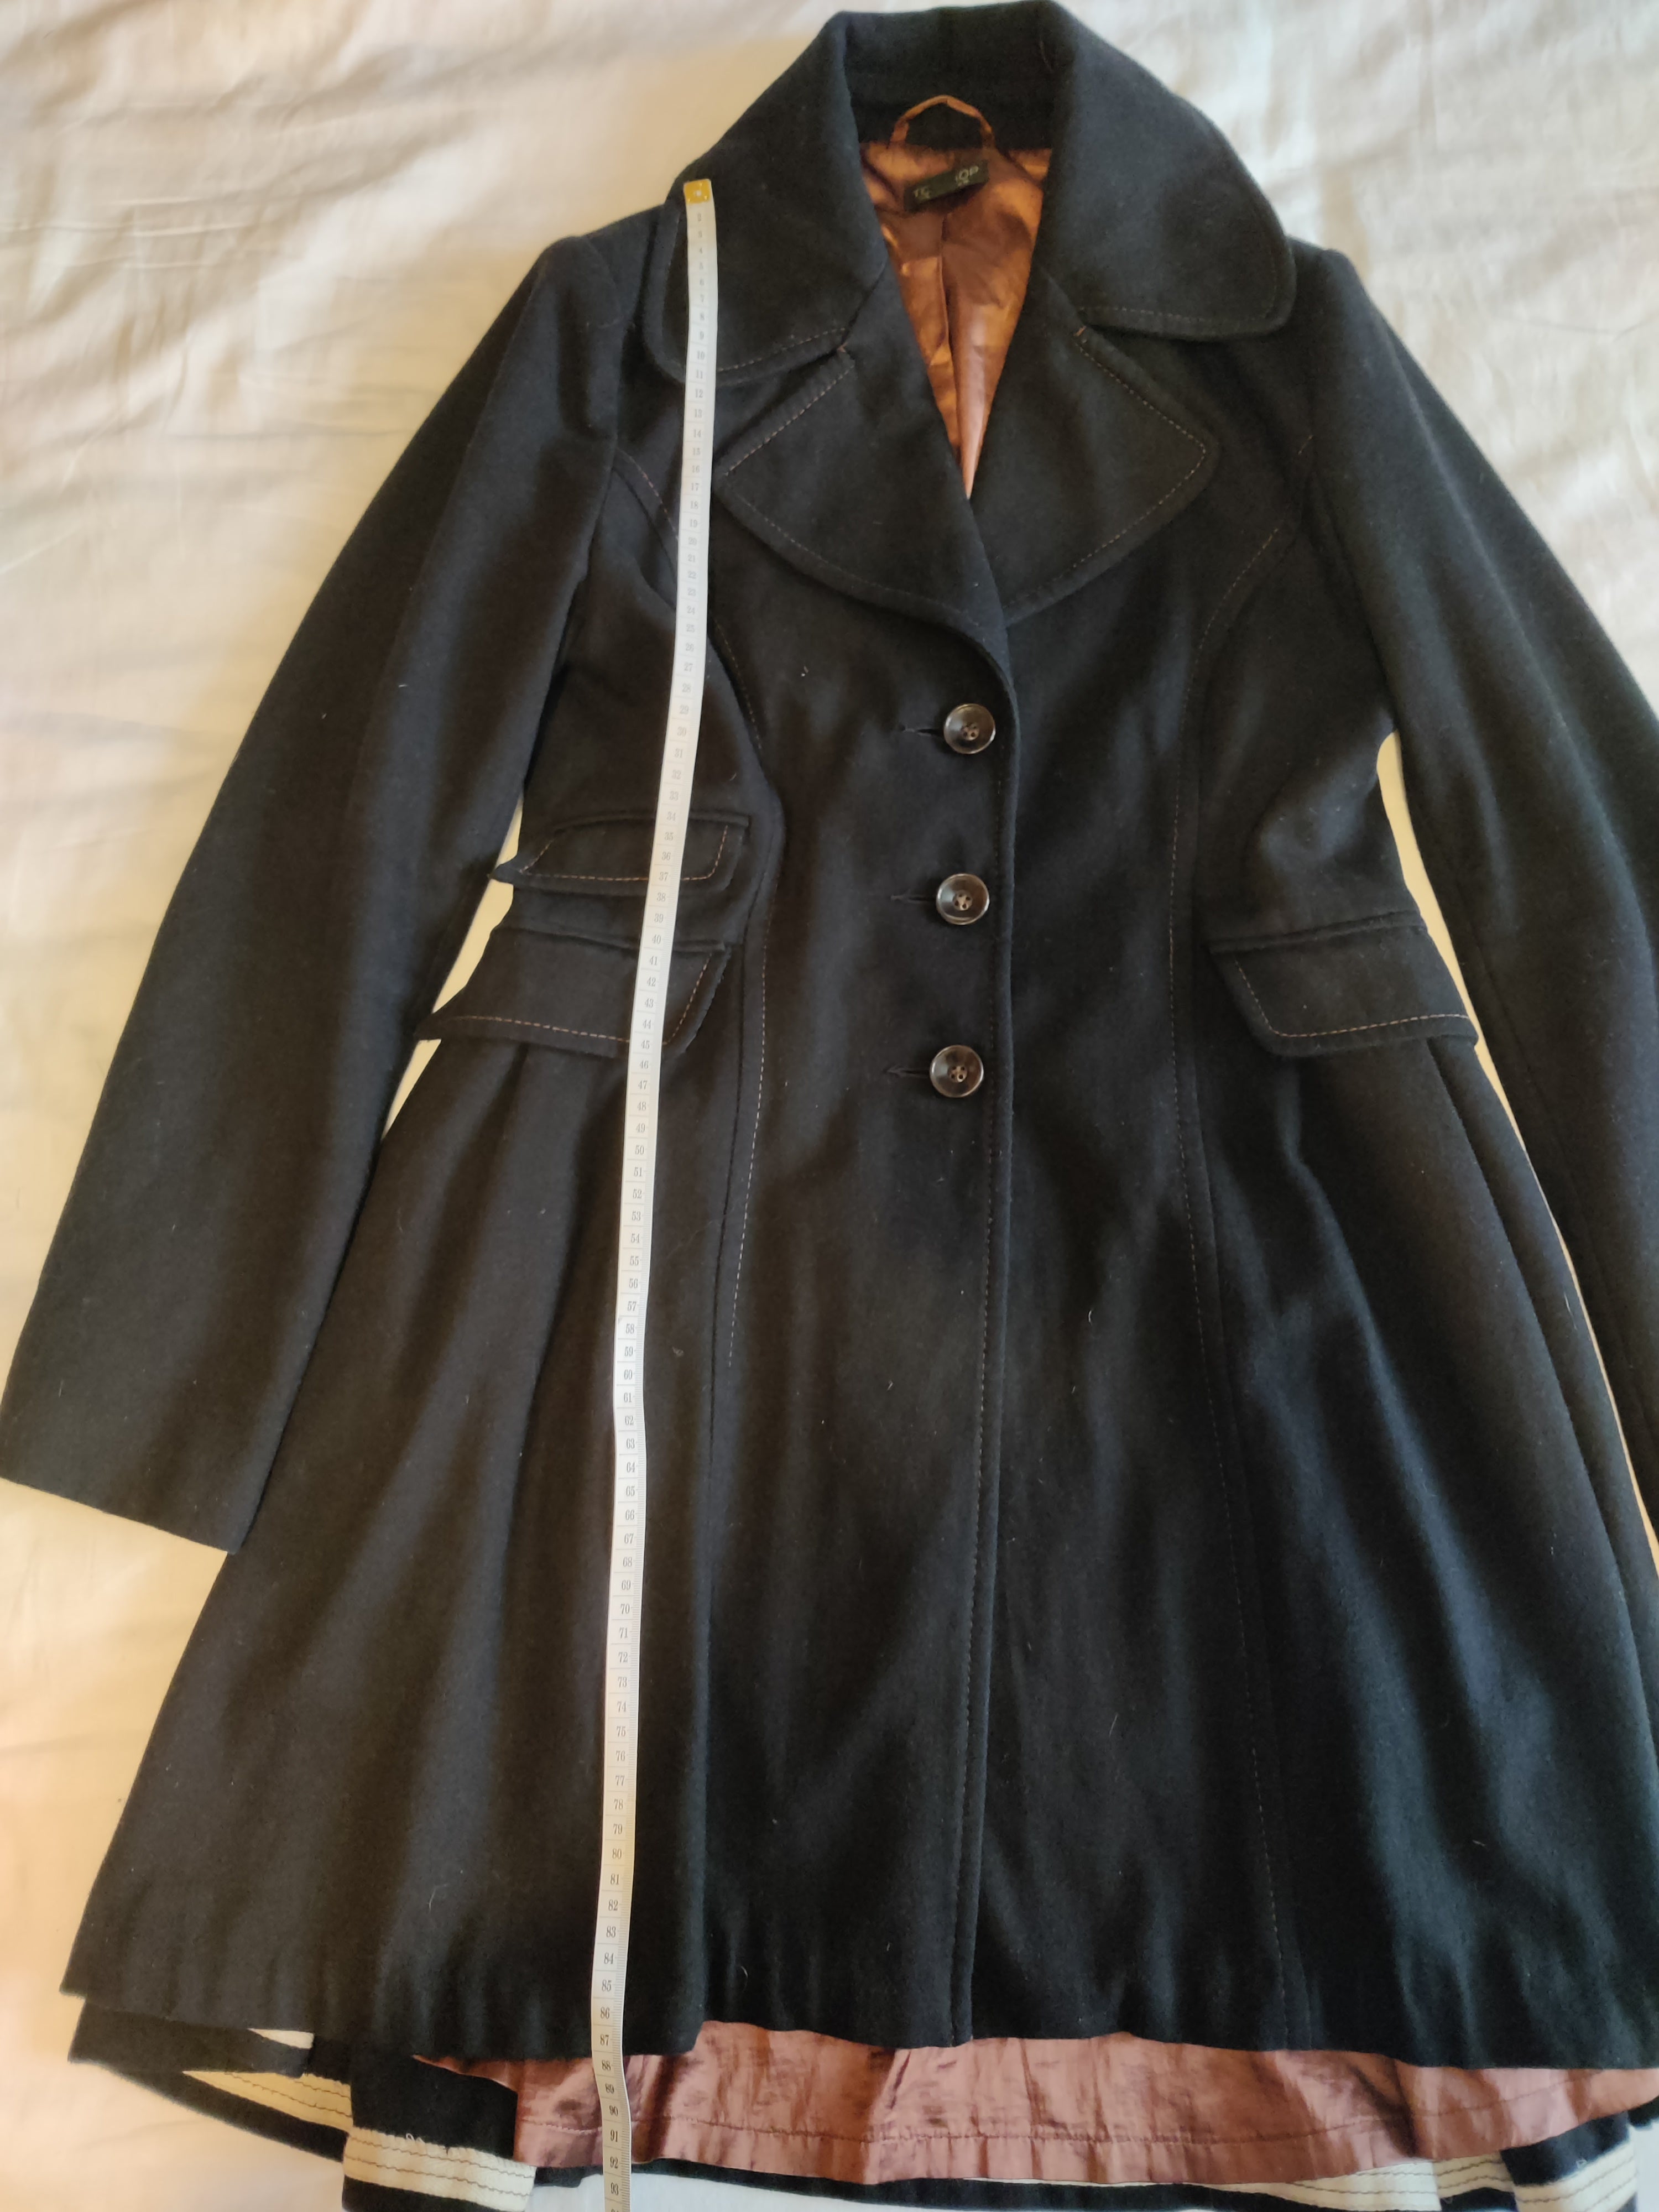 Preloved Black frock coat